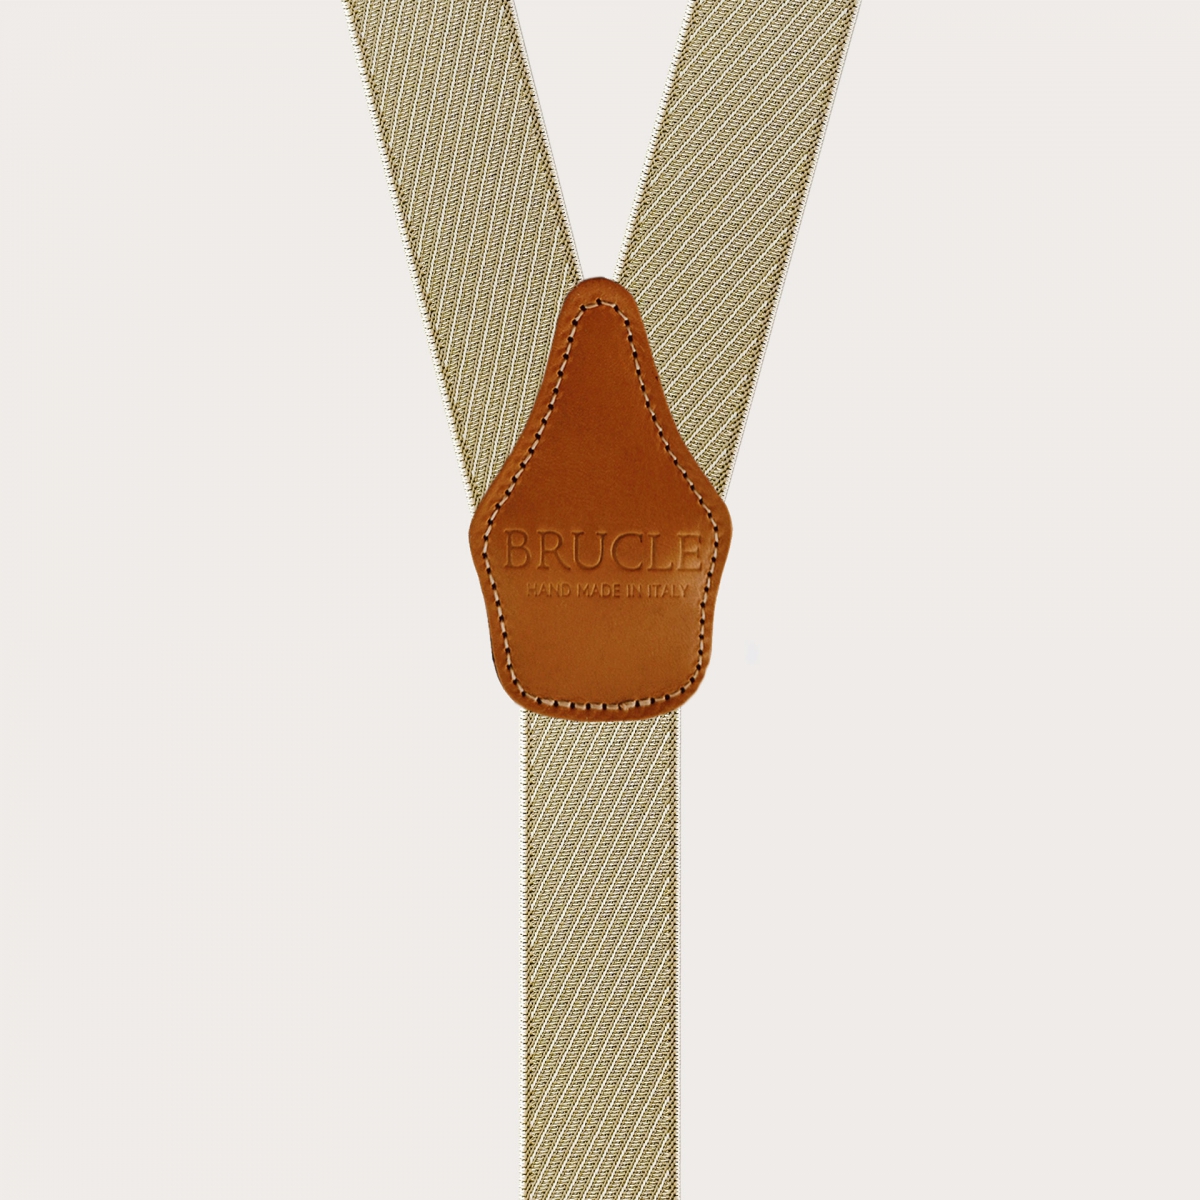 Bretelle elastiche a righe oro e beige con clip